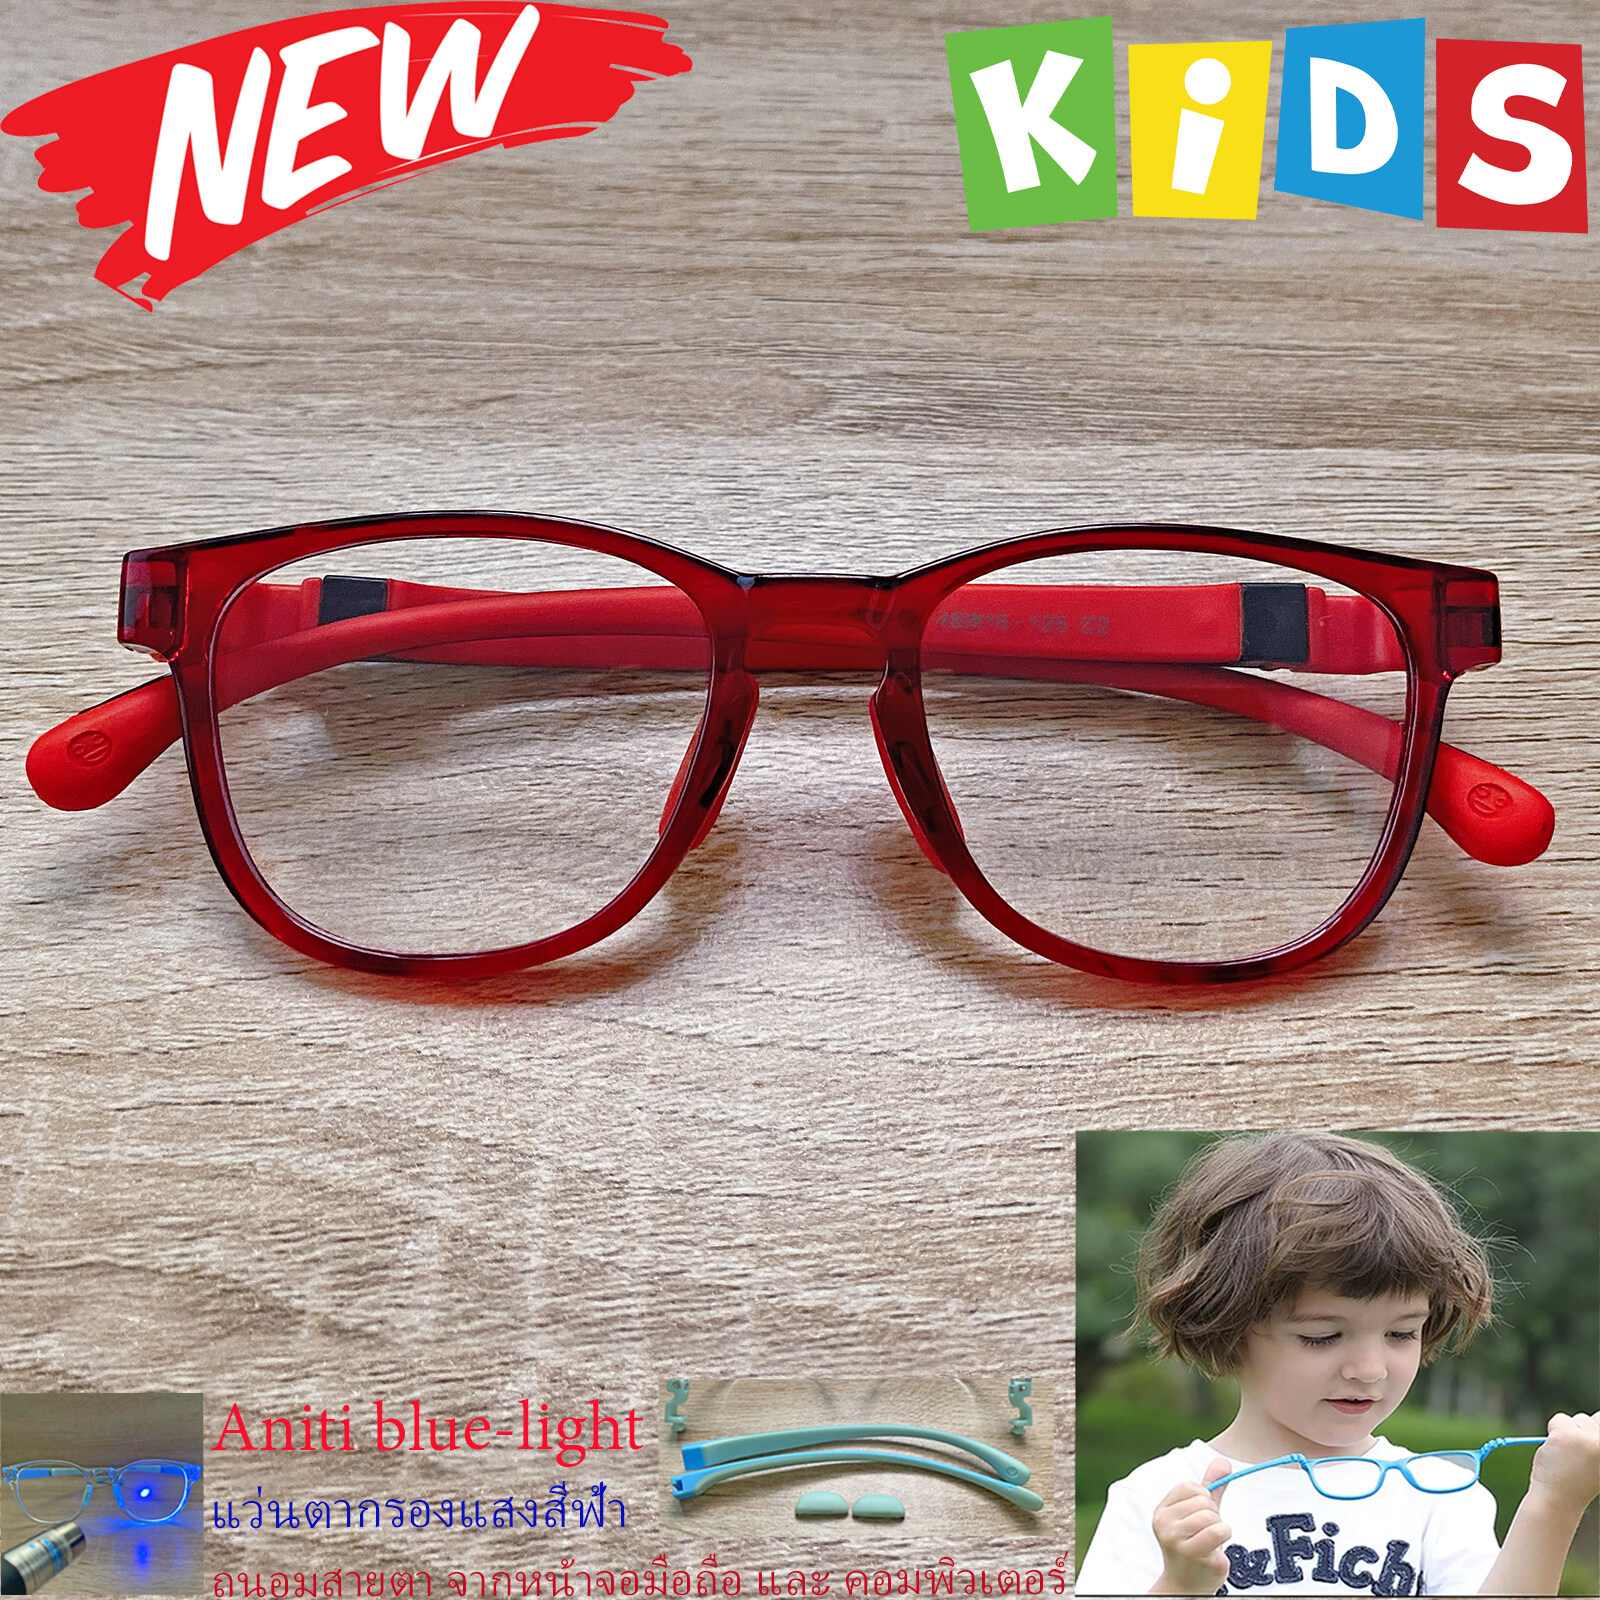 แว่นตาเด็ก กรองแสงสีฟ้า blue block แว่นเด็ก บลูบล็อค รุ่น 06 สีแดง ขาข้อต่อยืดหยุ่น ถอดขาเปลี่ยนได้ วัสดุTR90 เหมาะสำหรับเลนส์สายตา